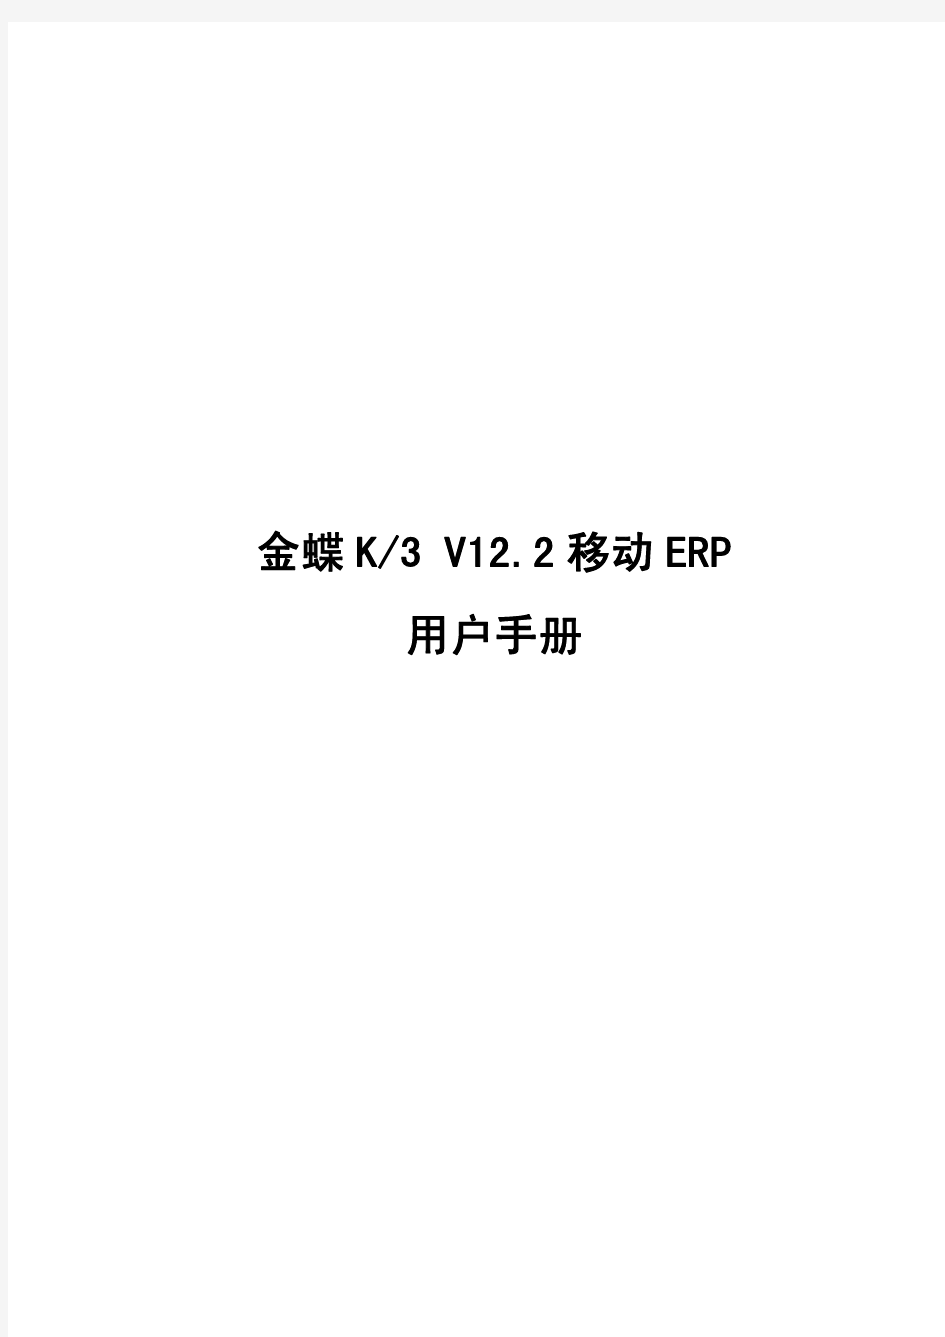 金蝶K3 V12.2 移动ERP用户手册